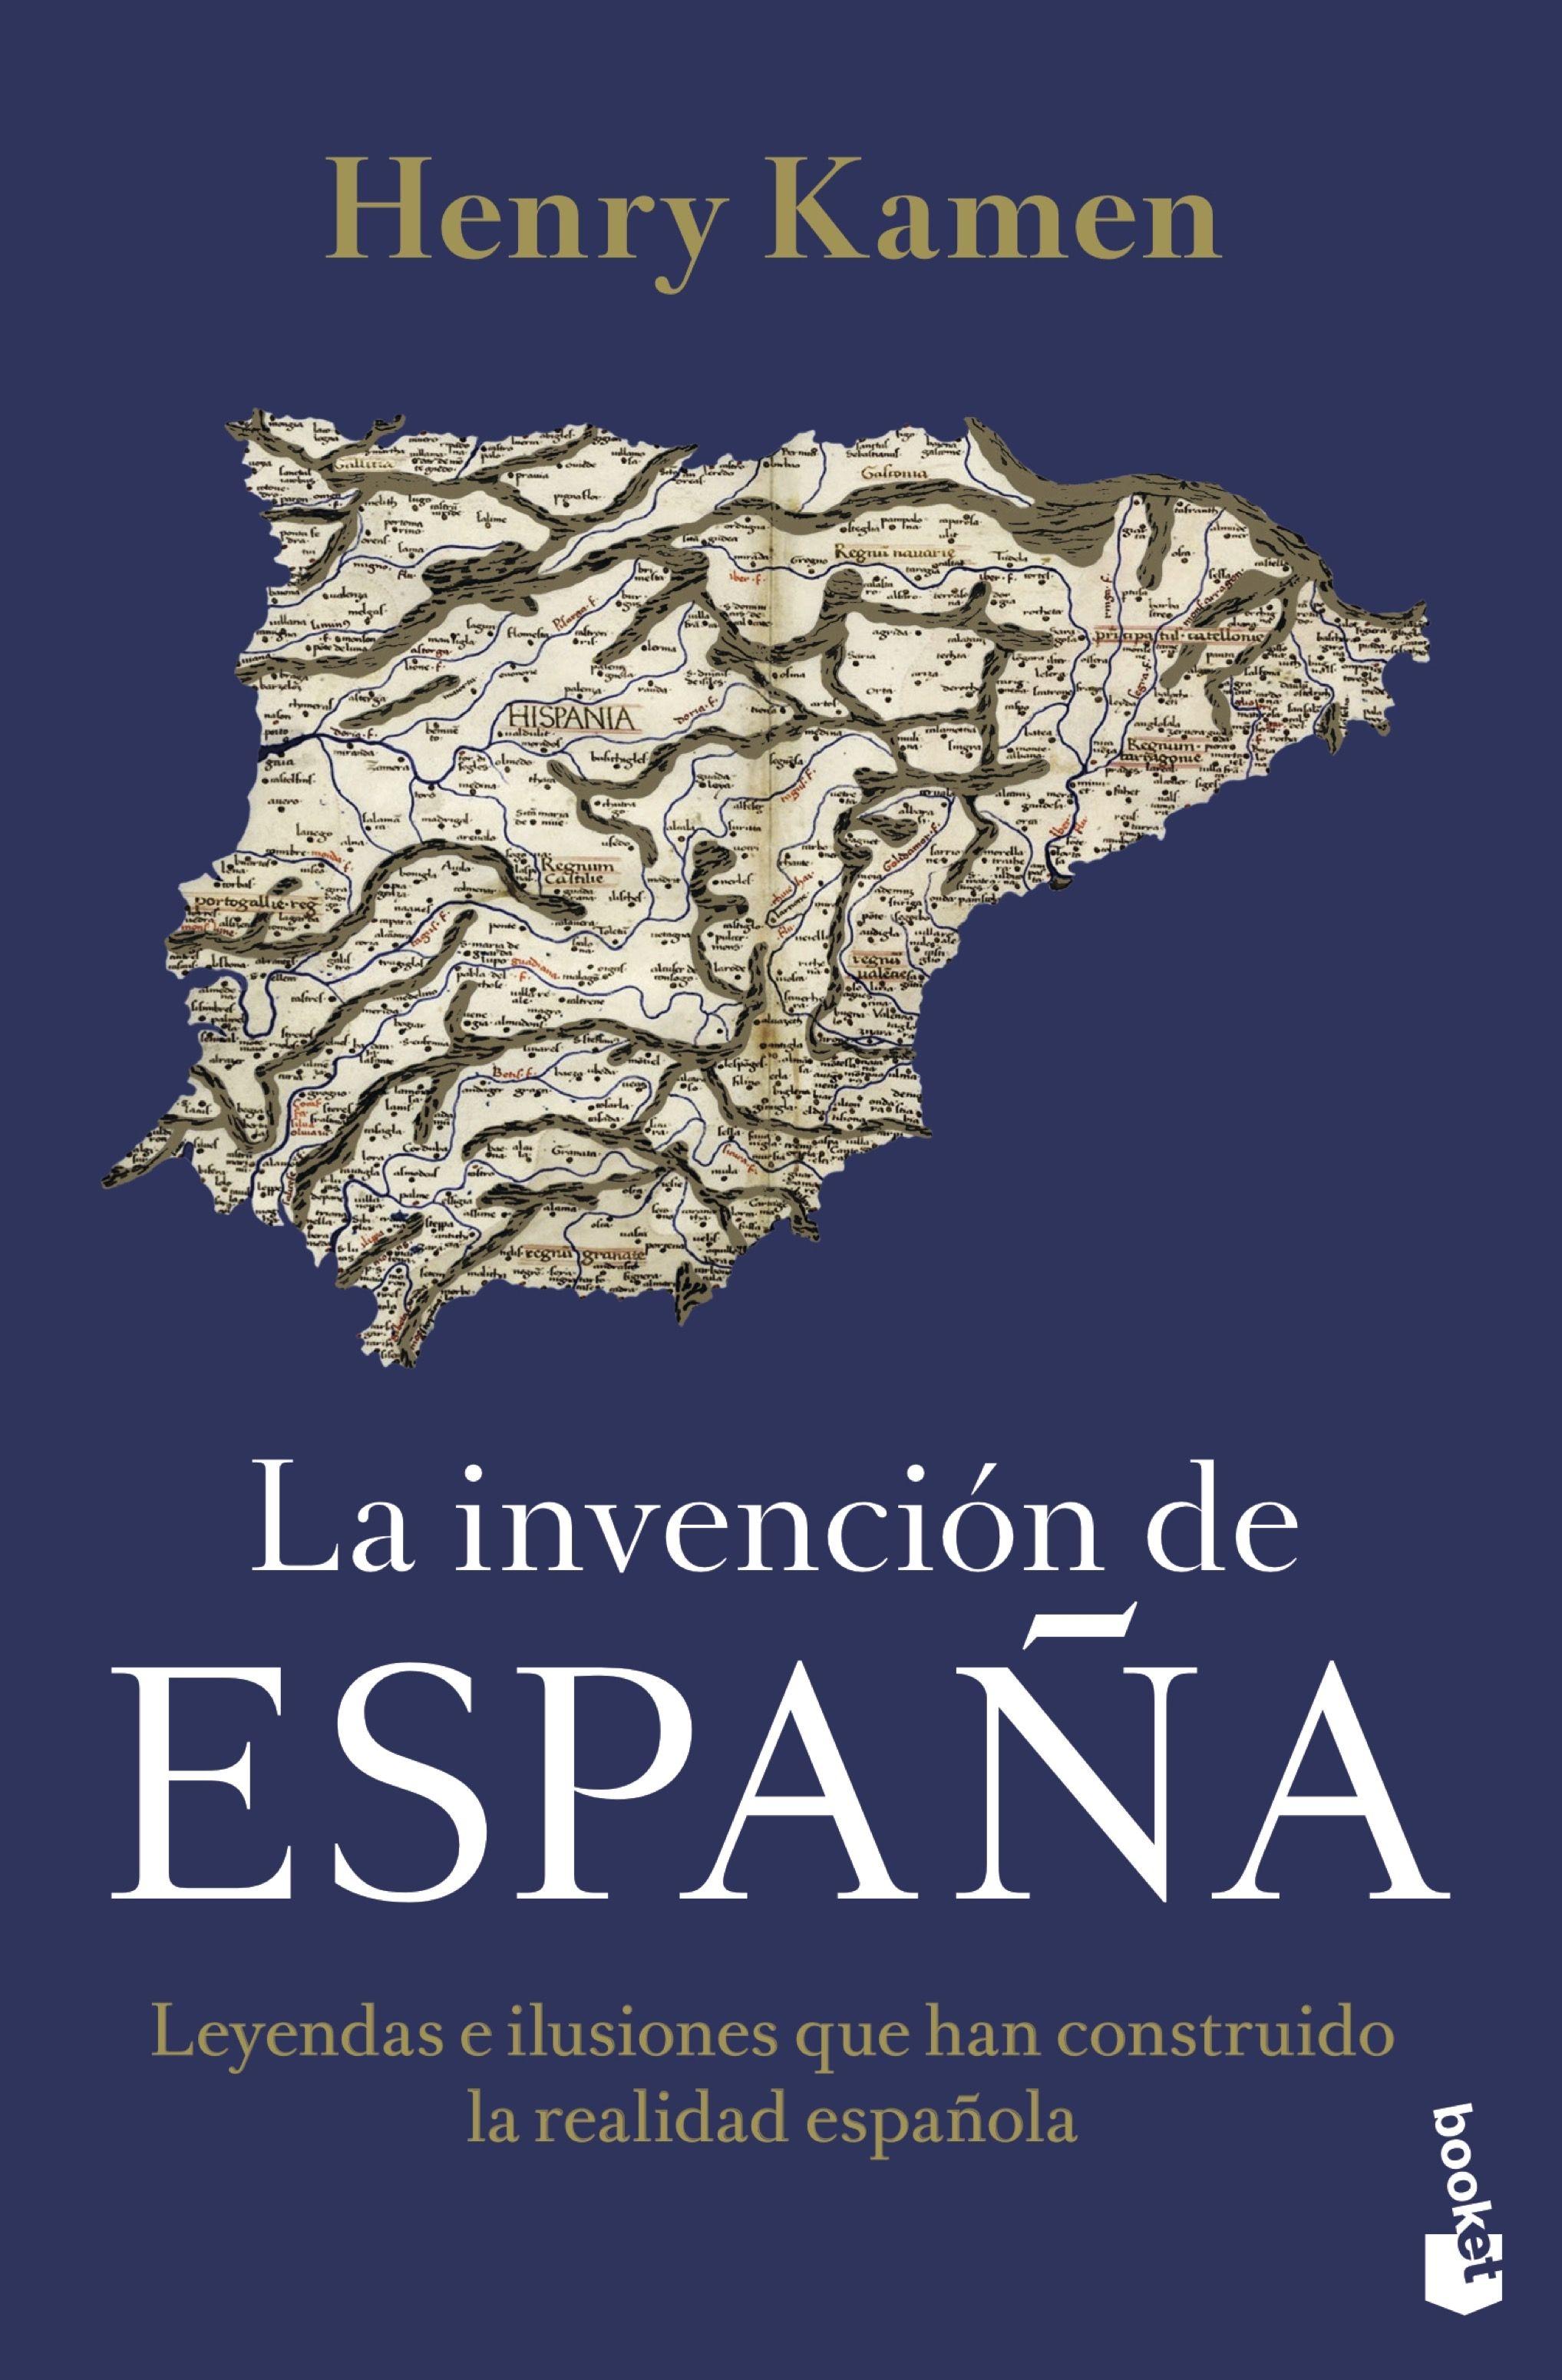 Invención de España, La "Leyendas e ilusiones que han construido la realidad española"